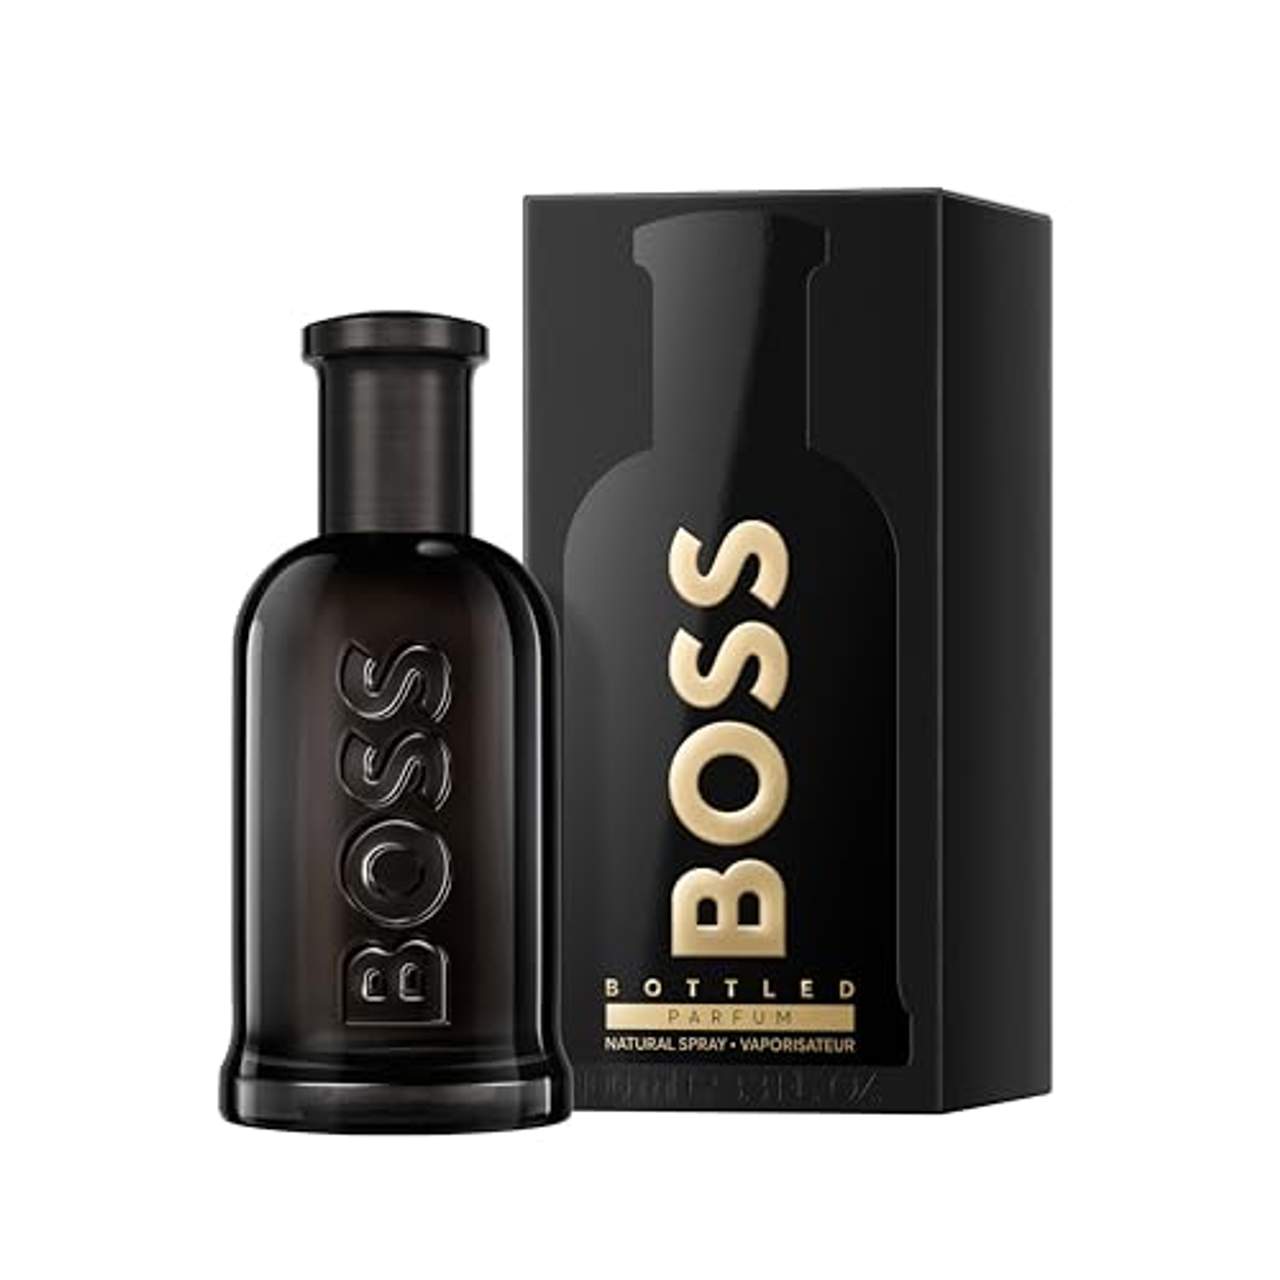 HUGO BOSS BOSS Bottled Parfum